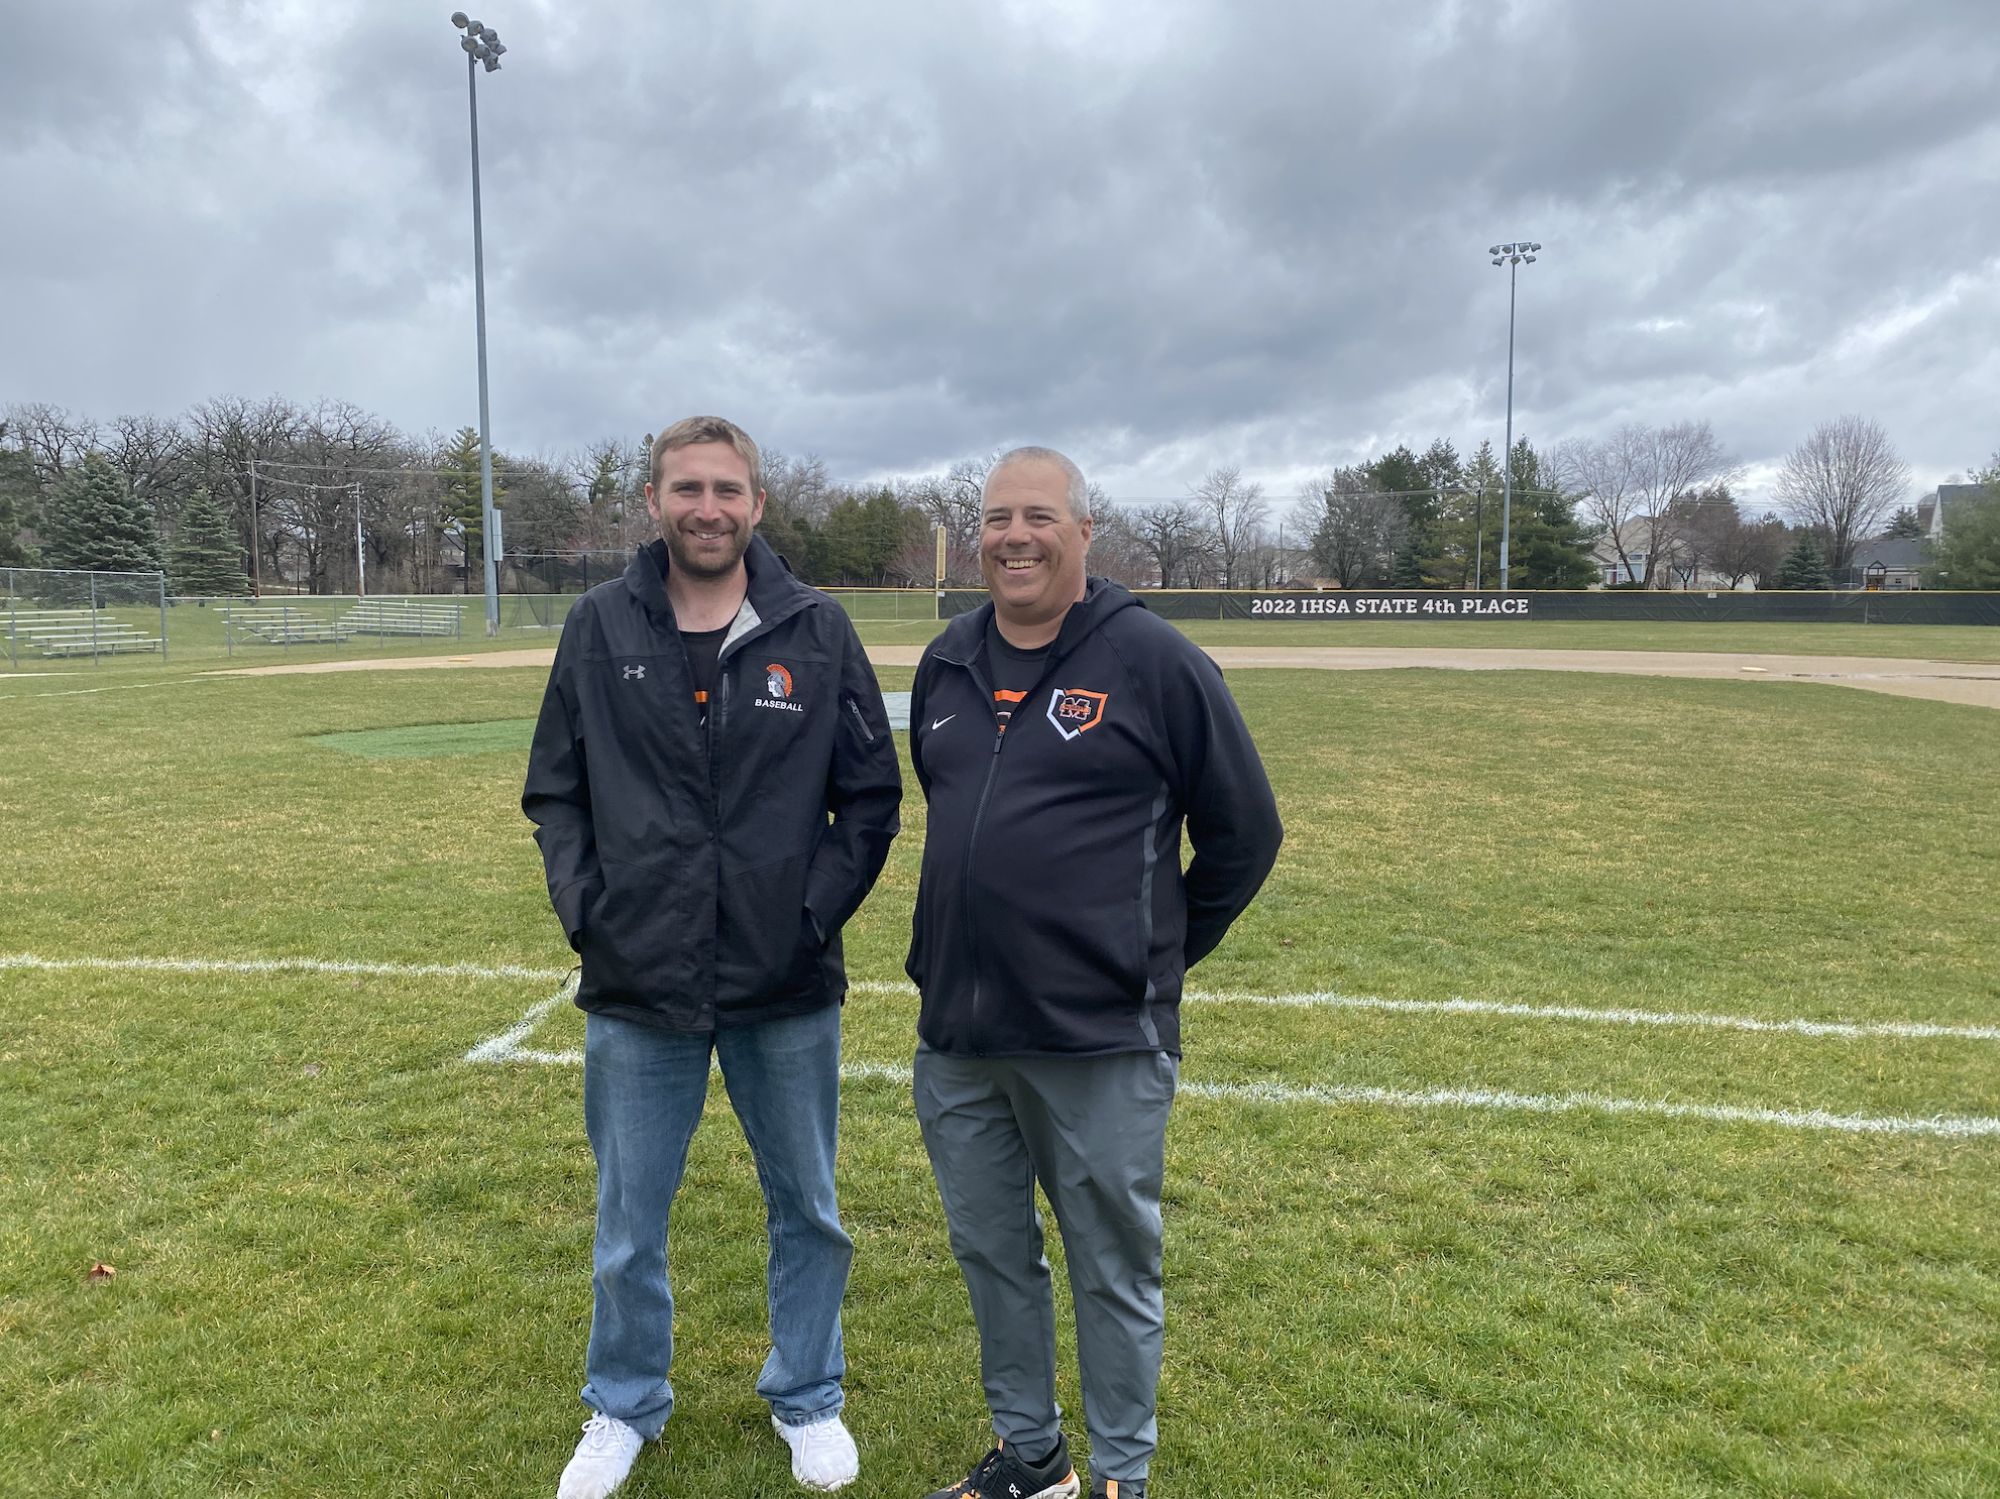 麦克亨利大学棒球队教练 Brian Rockweiler（右）和投球教练 Zach Badgley 在彼得森公园的球场上。